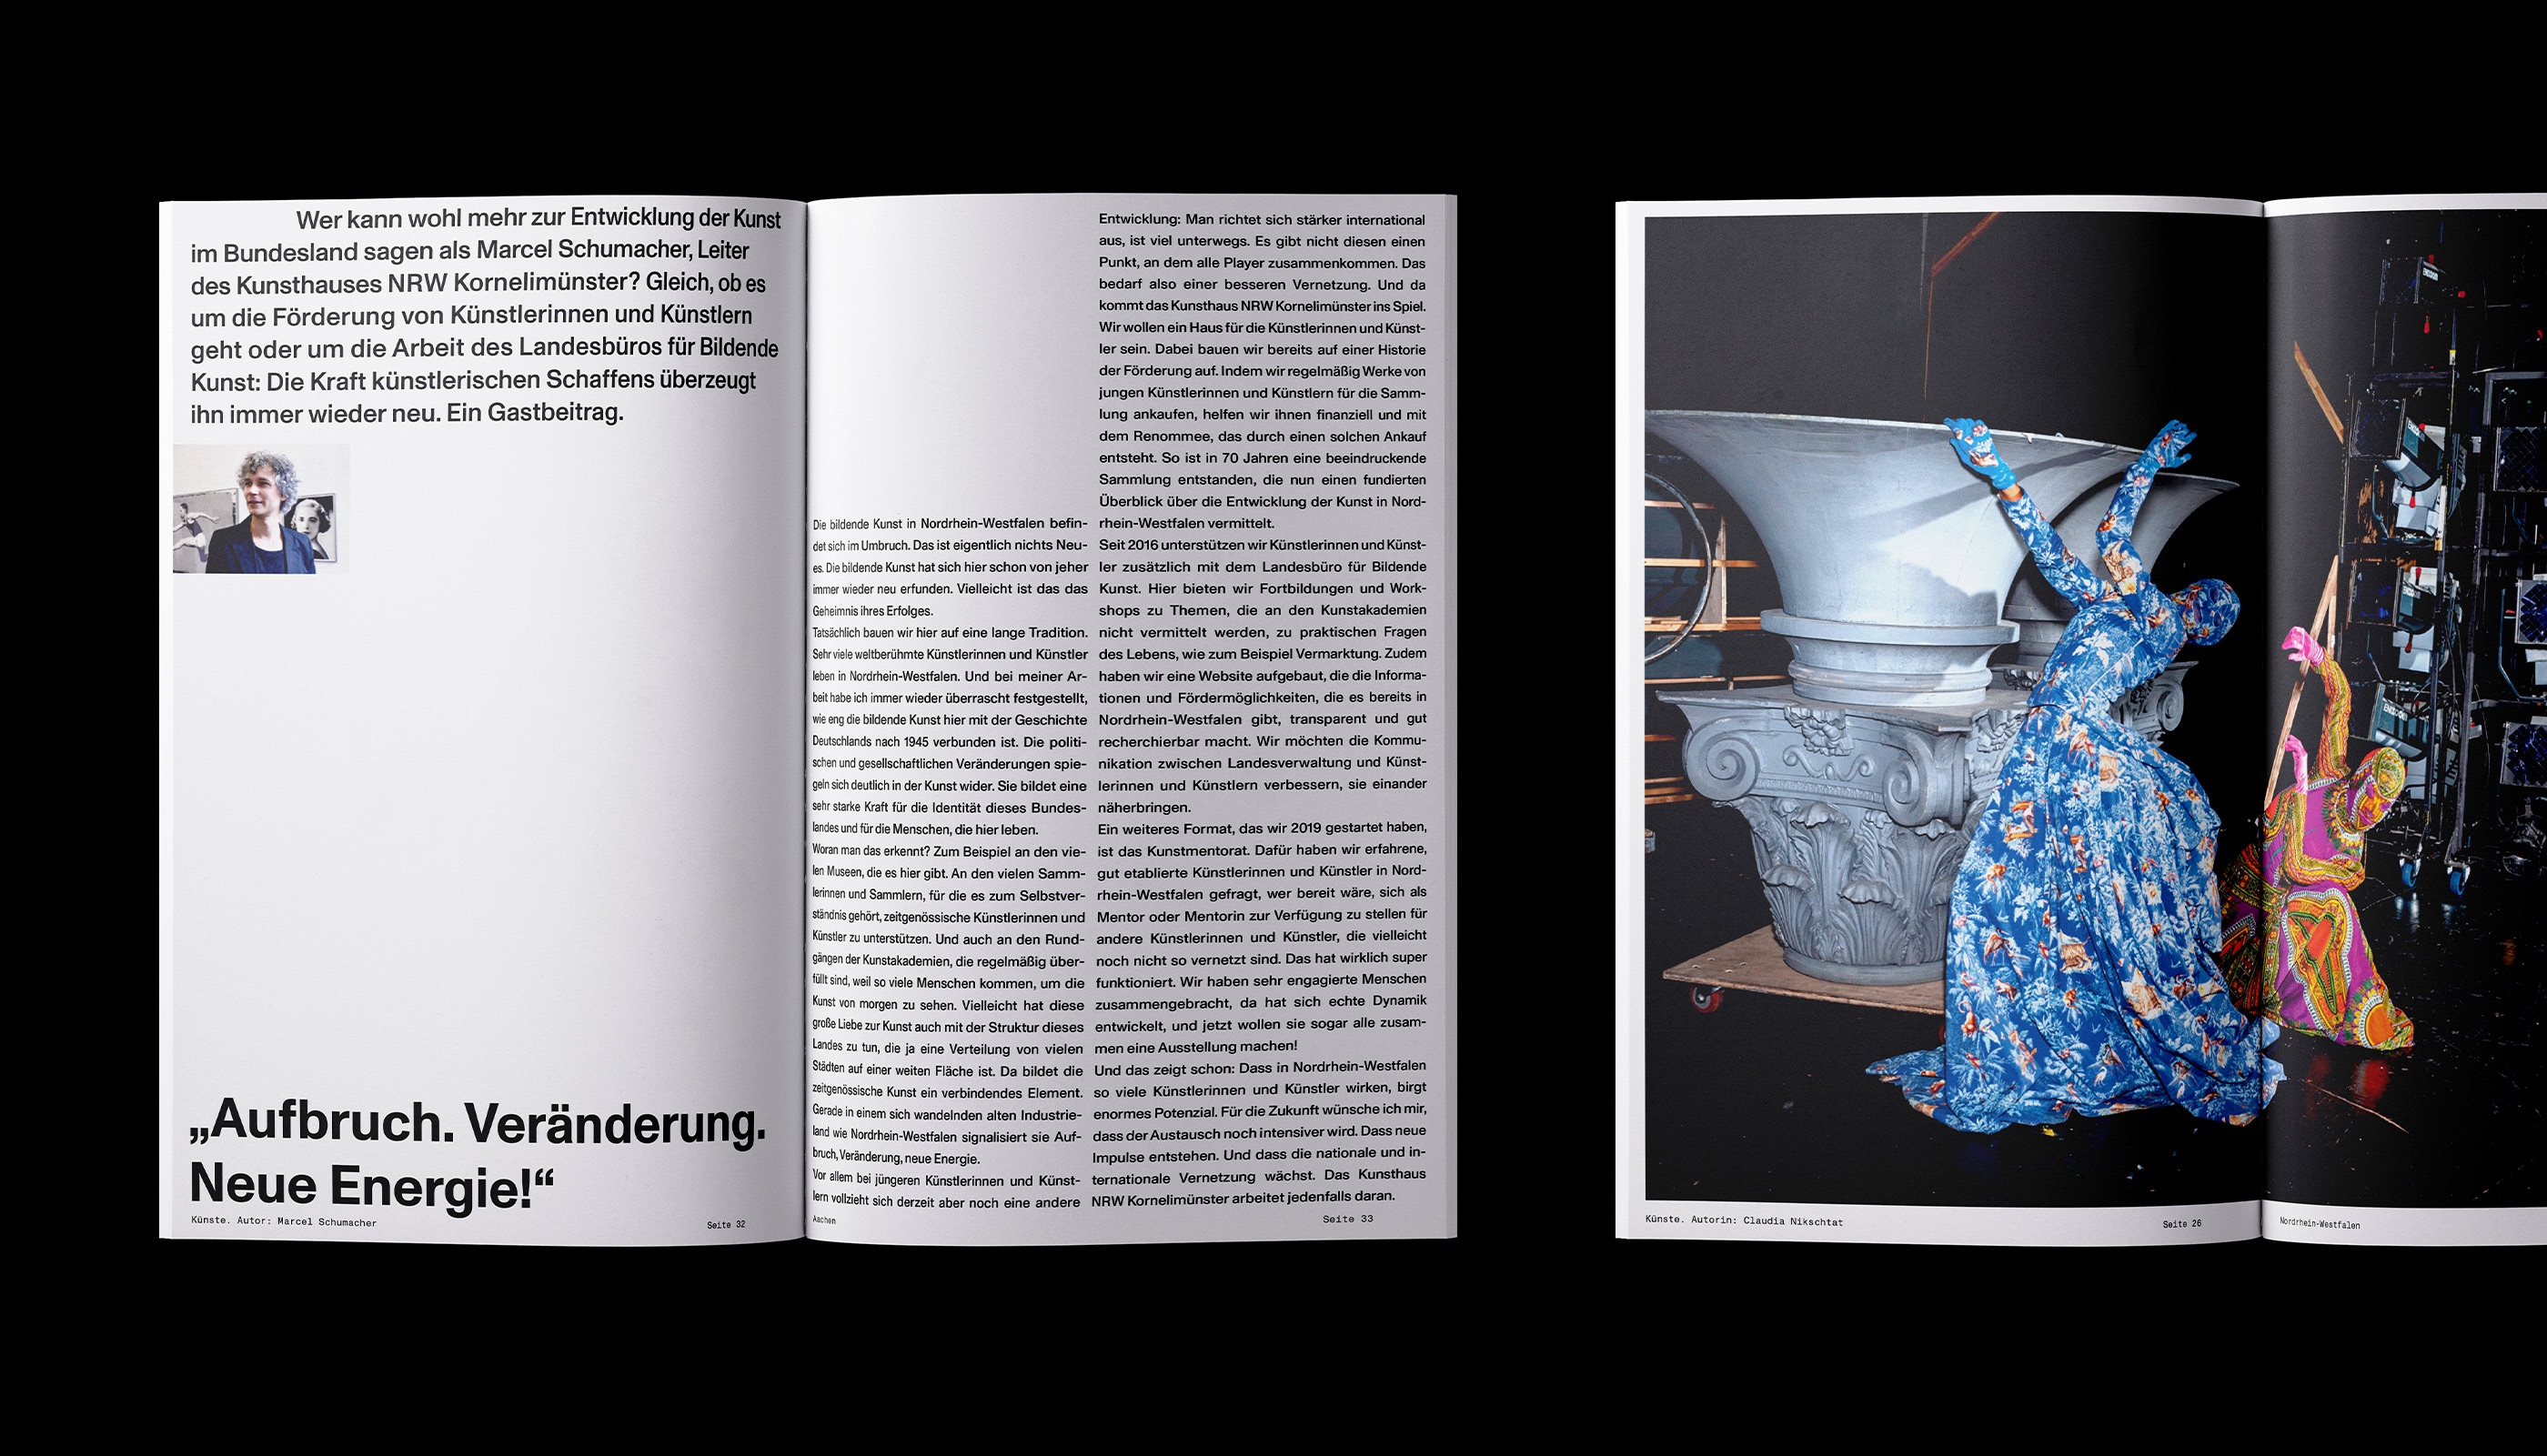 Ministerium für Kultur und Wissenschaft Nordrhein-Westfalen, Publication, editorial design, Katalog, Buch, Magazin, Art direction